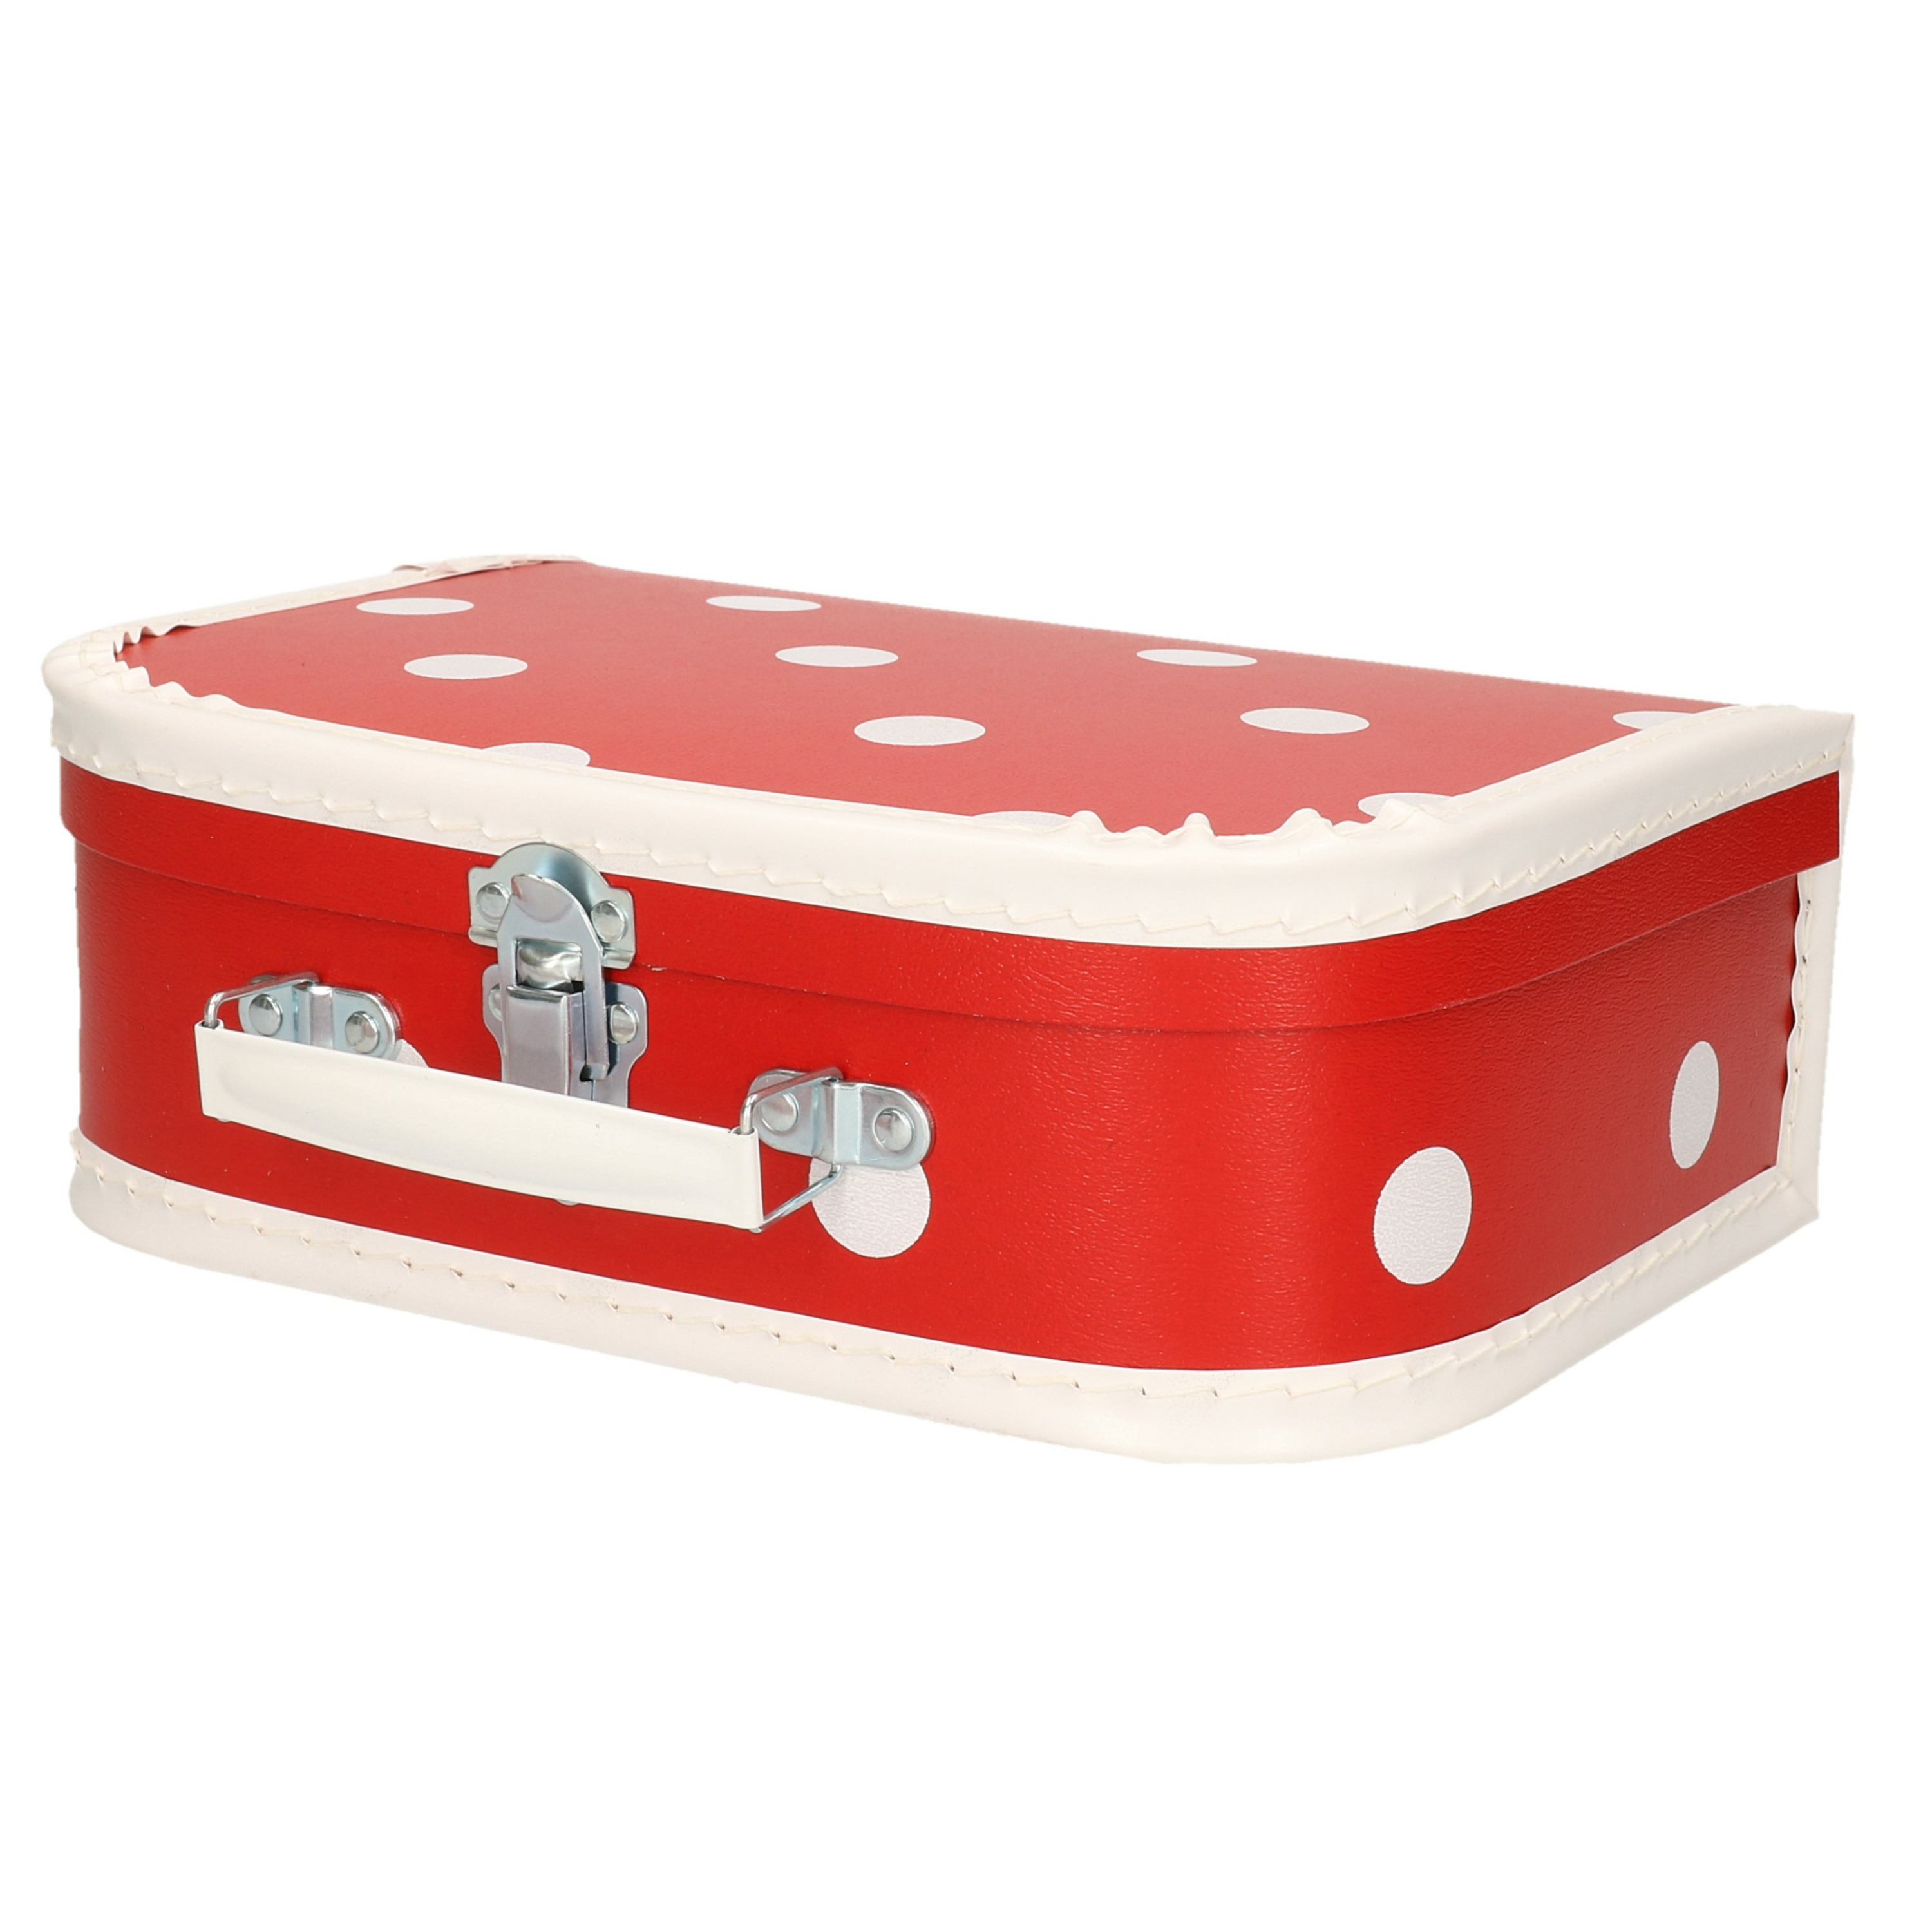 Rode speelgoedkoffer met witte stip 30 cm